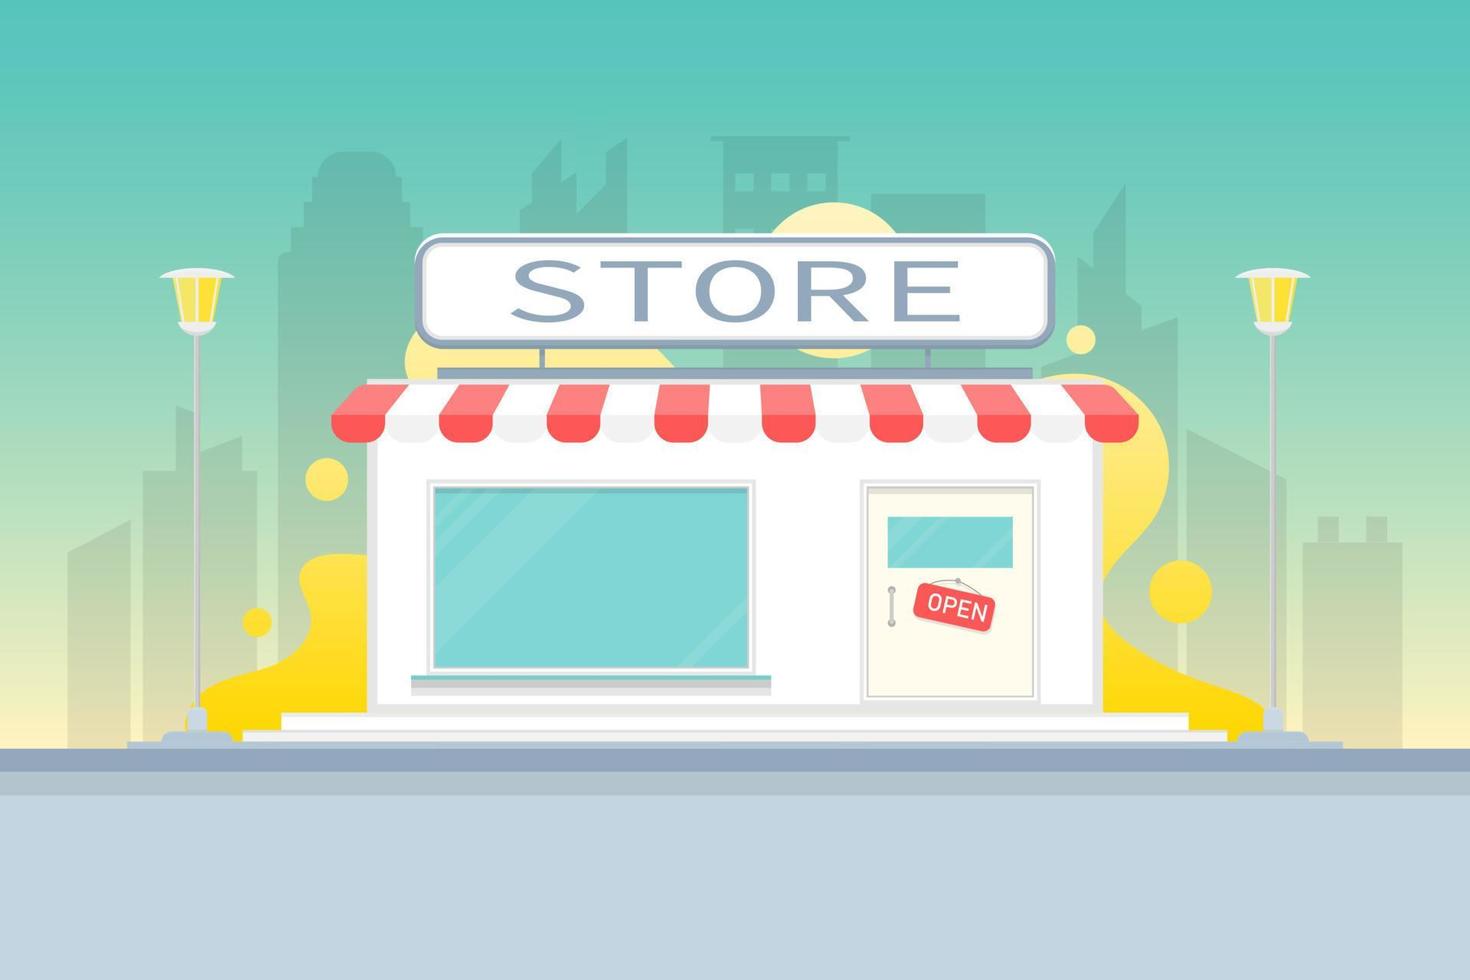 diseño de tienda de tienda creativa vectorial, tienda de tienda en ilustración de marketing digital urbano. vector